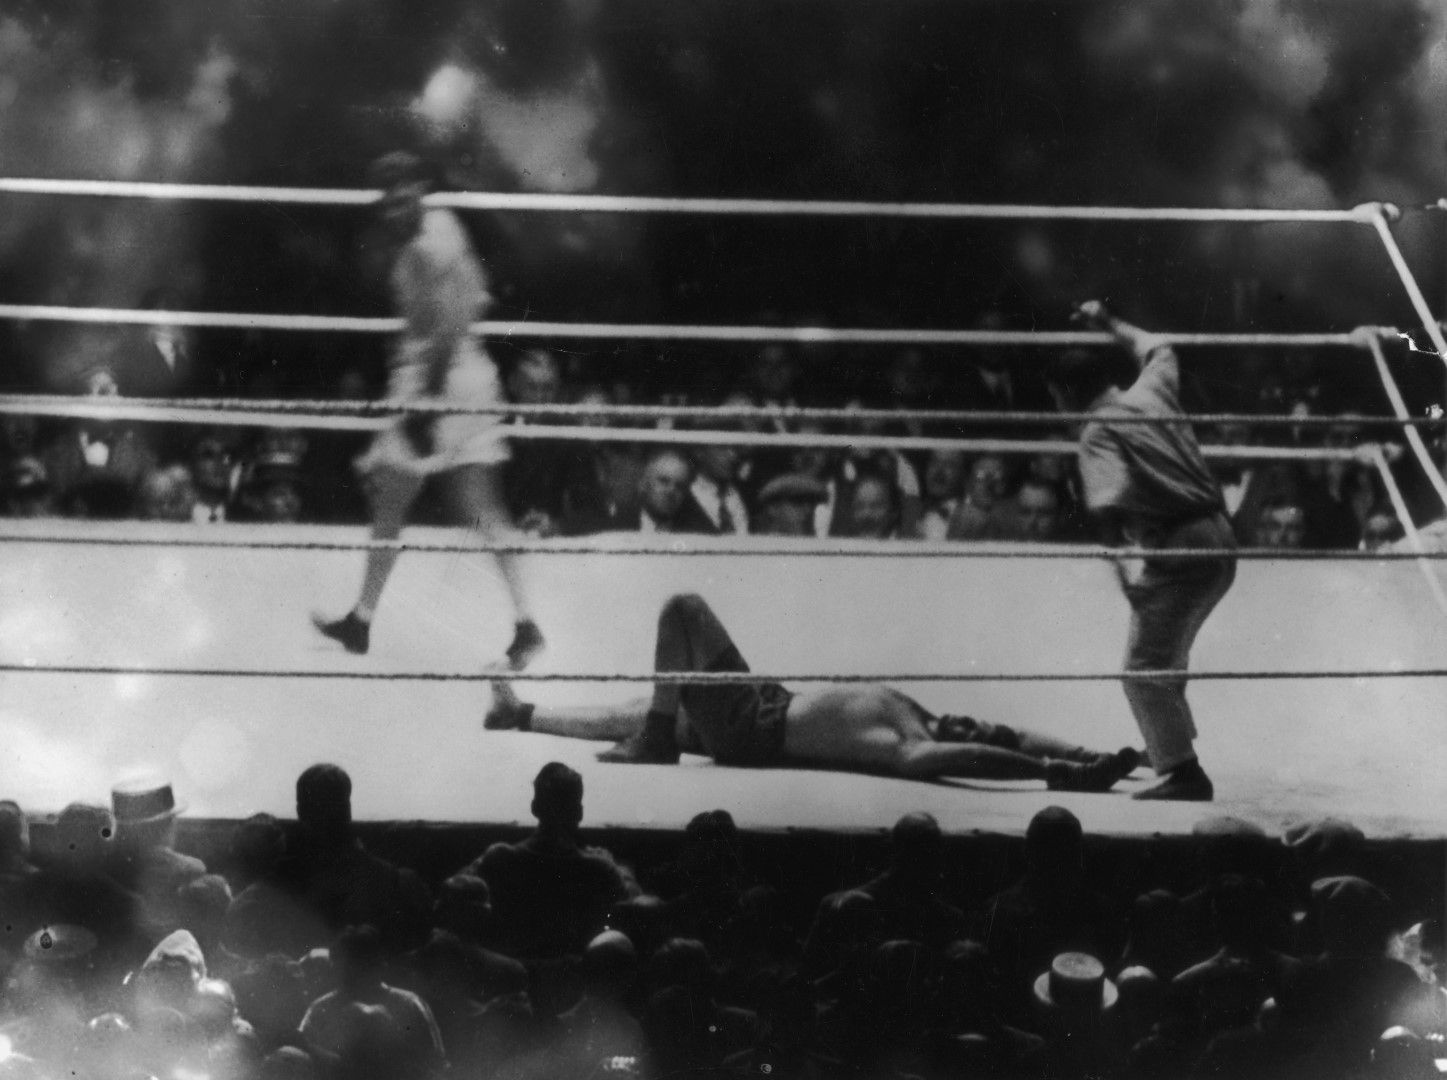 Джак Демпси - Луис Фирпо На 14 септември 1923 г. шампионът Демпси   защитава титлата си, а претендент е Бикът от   Пампасите - Фирпо. Един от най-лудите мачове   в историята продължва по-малко от два рунда. В първия Демпси сваля 7 пъти (!) съперника,   като тогава няма правило за три нокдауна.   Шампионът просто чака разклатения аржентинец   да се изправи, и го просва пак, и пак... Но в края на този рунд Бикът забива такава   серия юмруци в брадата на Демпси, че го   преобръща с краката нагоре през въжетата.   Шампионът удря главата си в пишеща машина   край ринга, като получава огромна рана отзад   над тила. Въпреки това печели с нокаут в 57-ата секунда   на втория рунд от този изумителен спектакъл   на тежки удари.